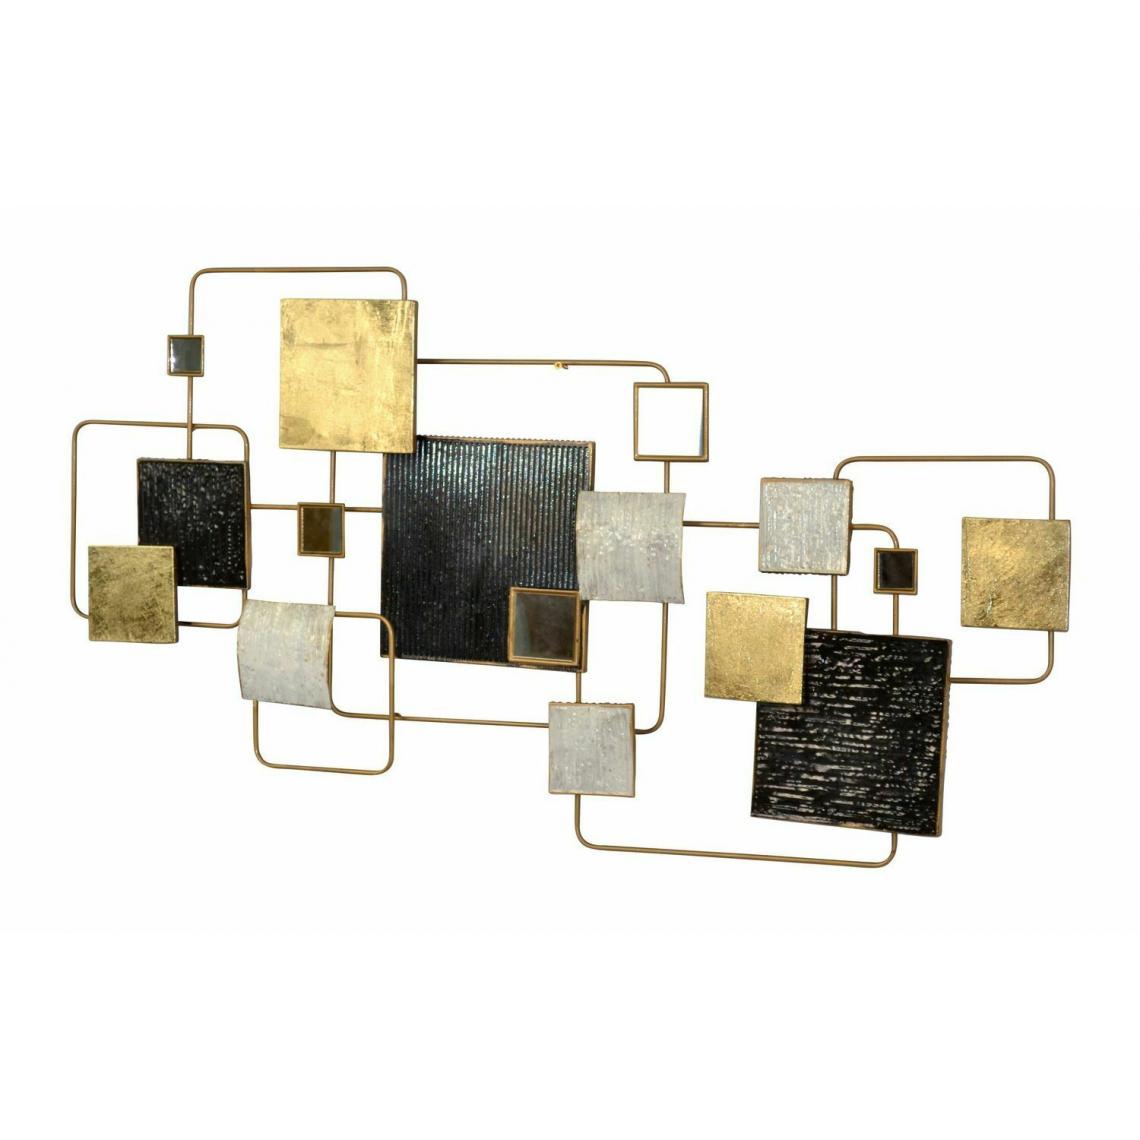 Decoshop26 - Décoration murale en métal différentes formes carrées crème noir doré a suspendre 128x5,5x68 cm DEC05115 - Objets déco